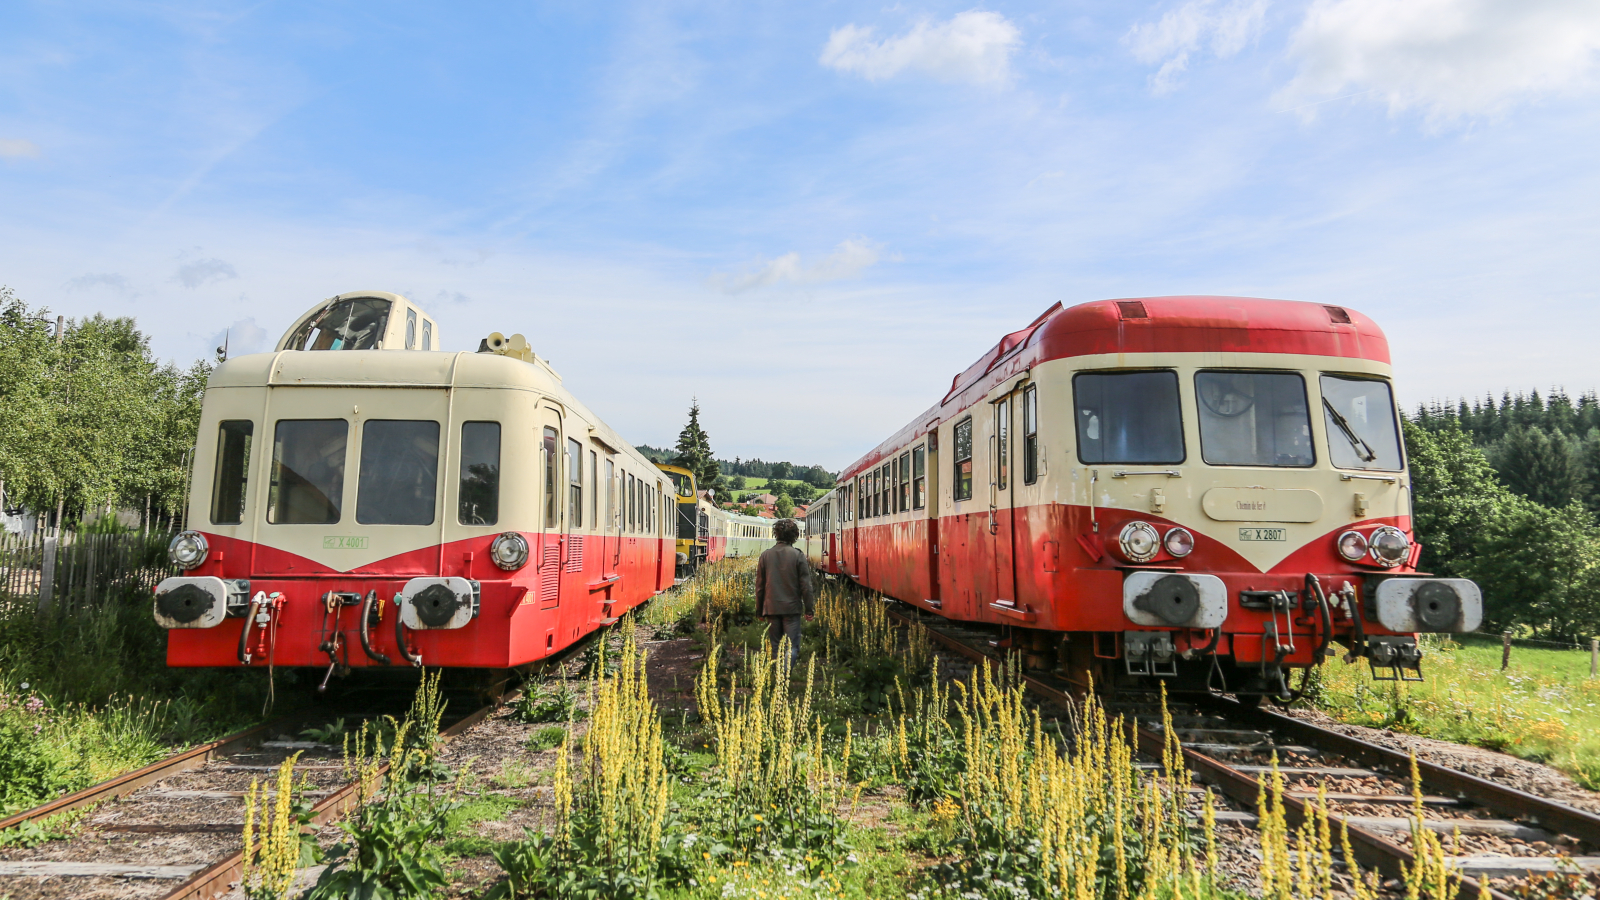 Train touristique du Haut-Forez